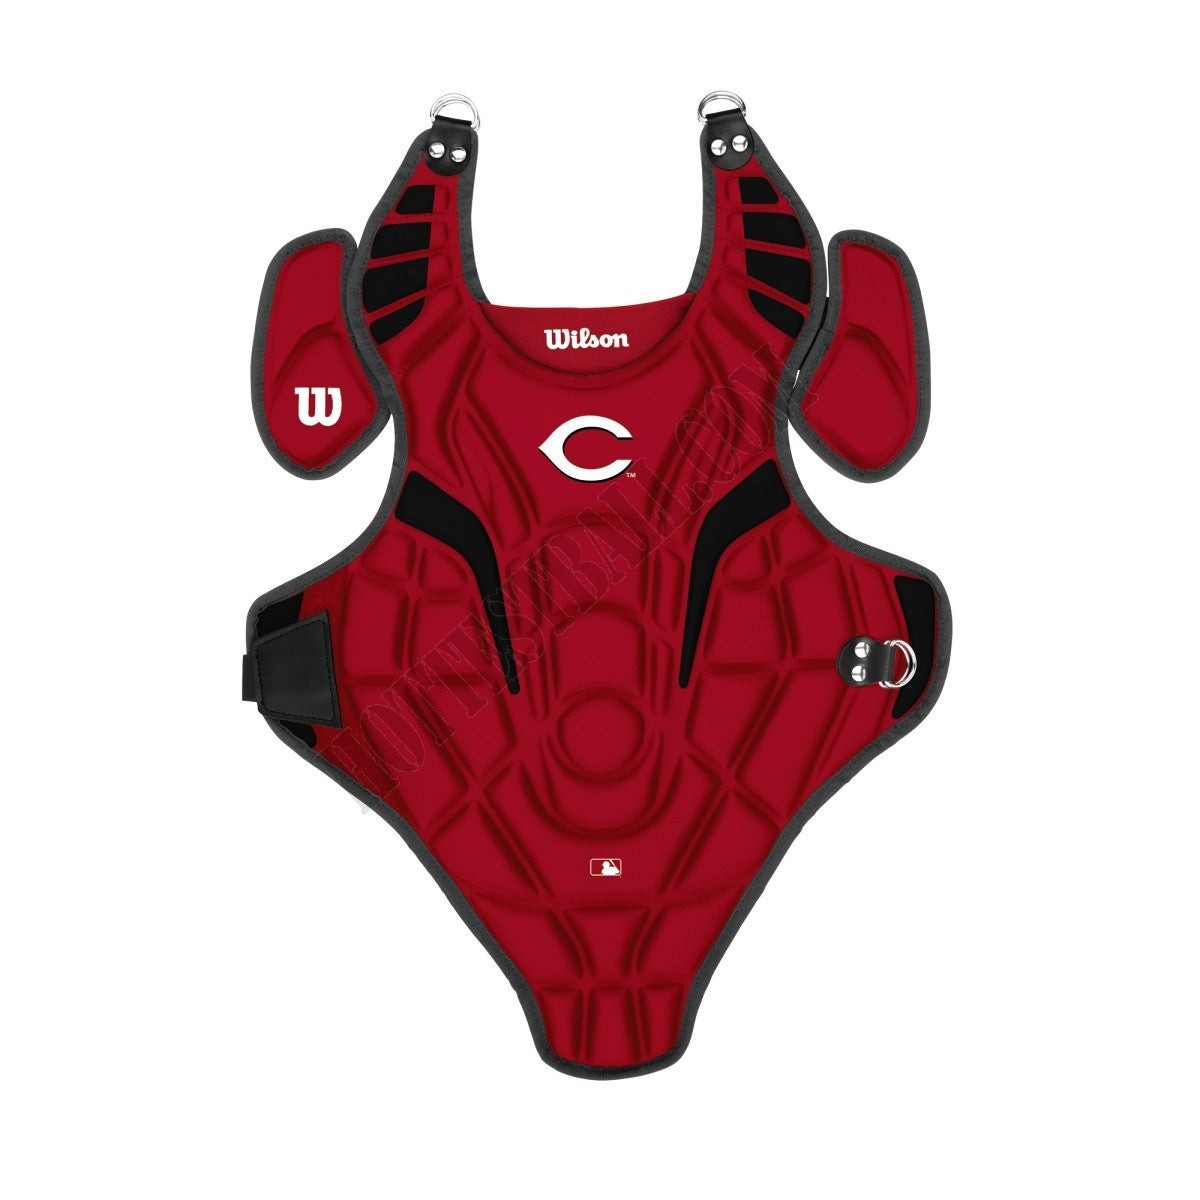 EZ Gear Catcher's Kit - Cincinnati Reds - Wilson Discount Store - -0